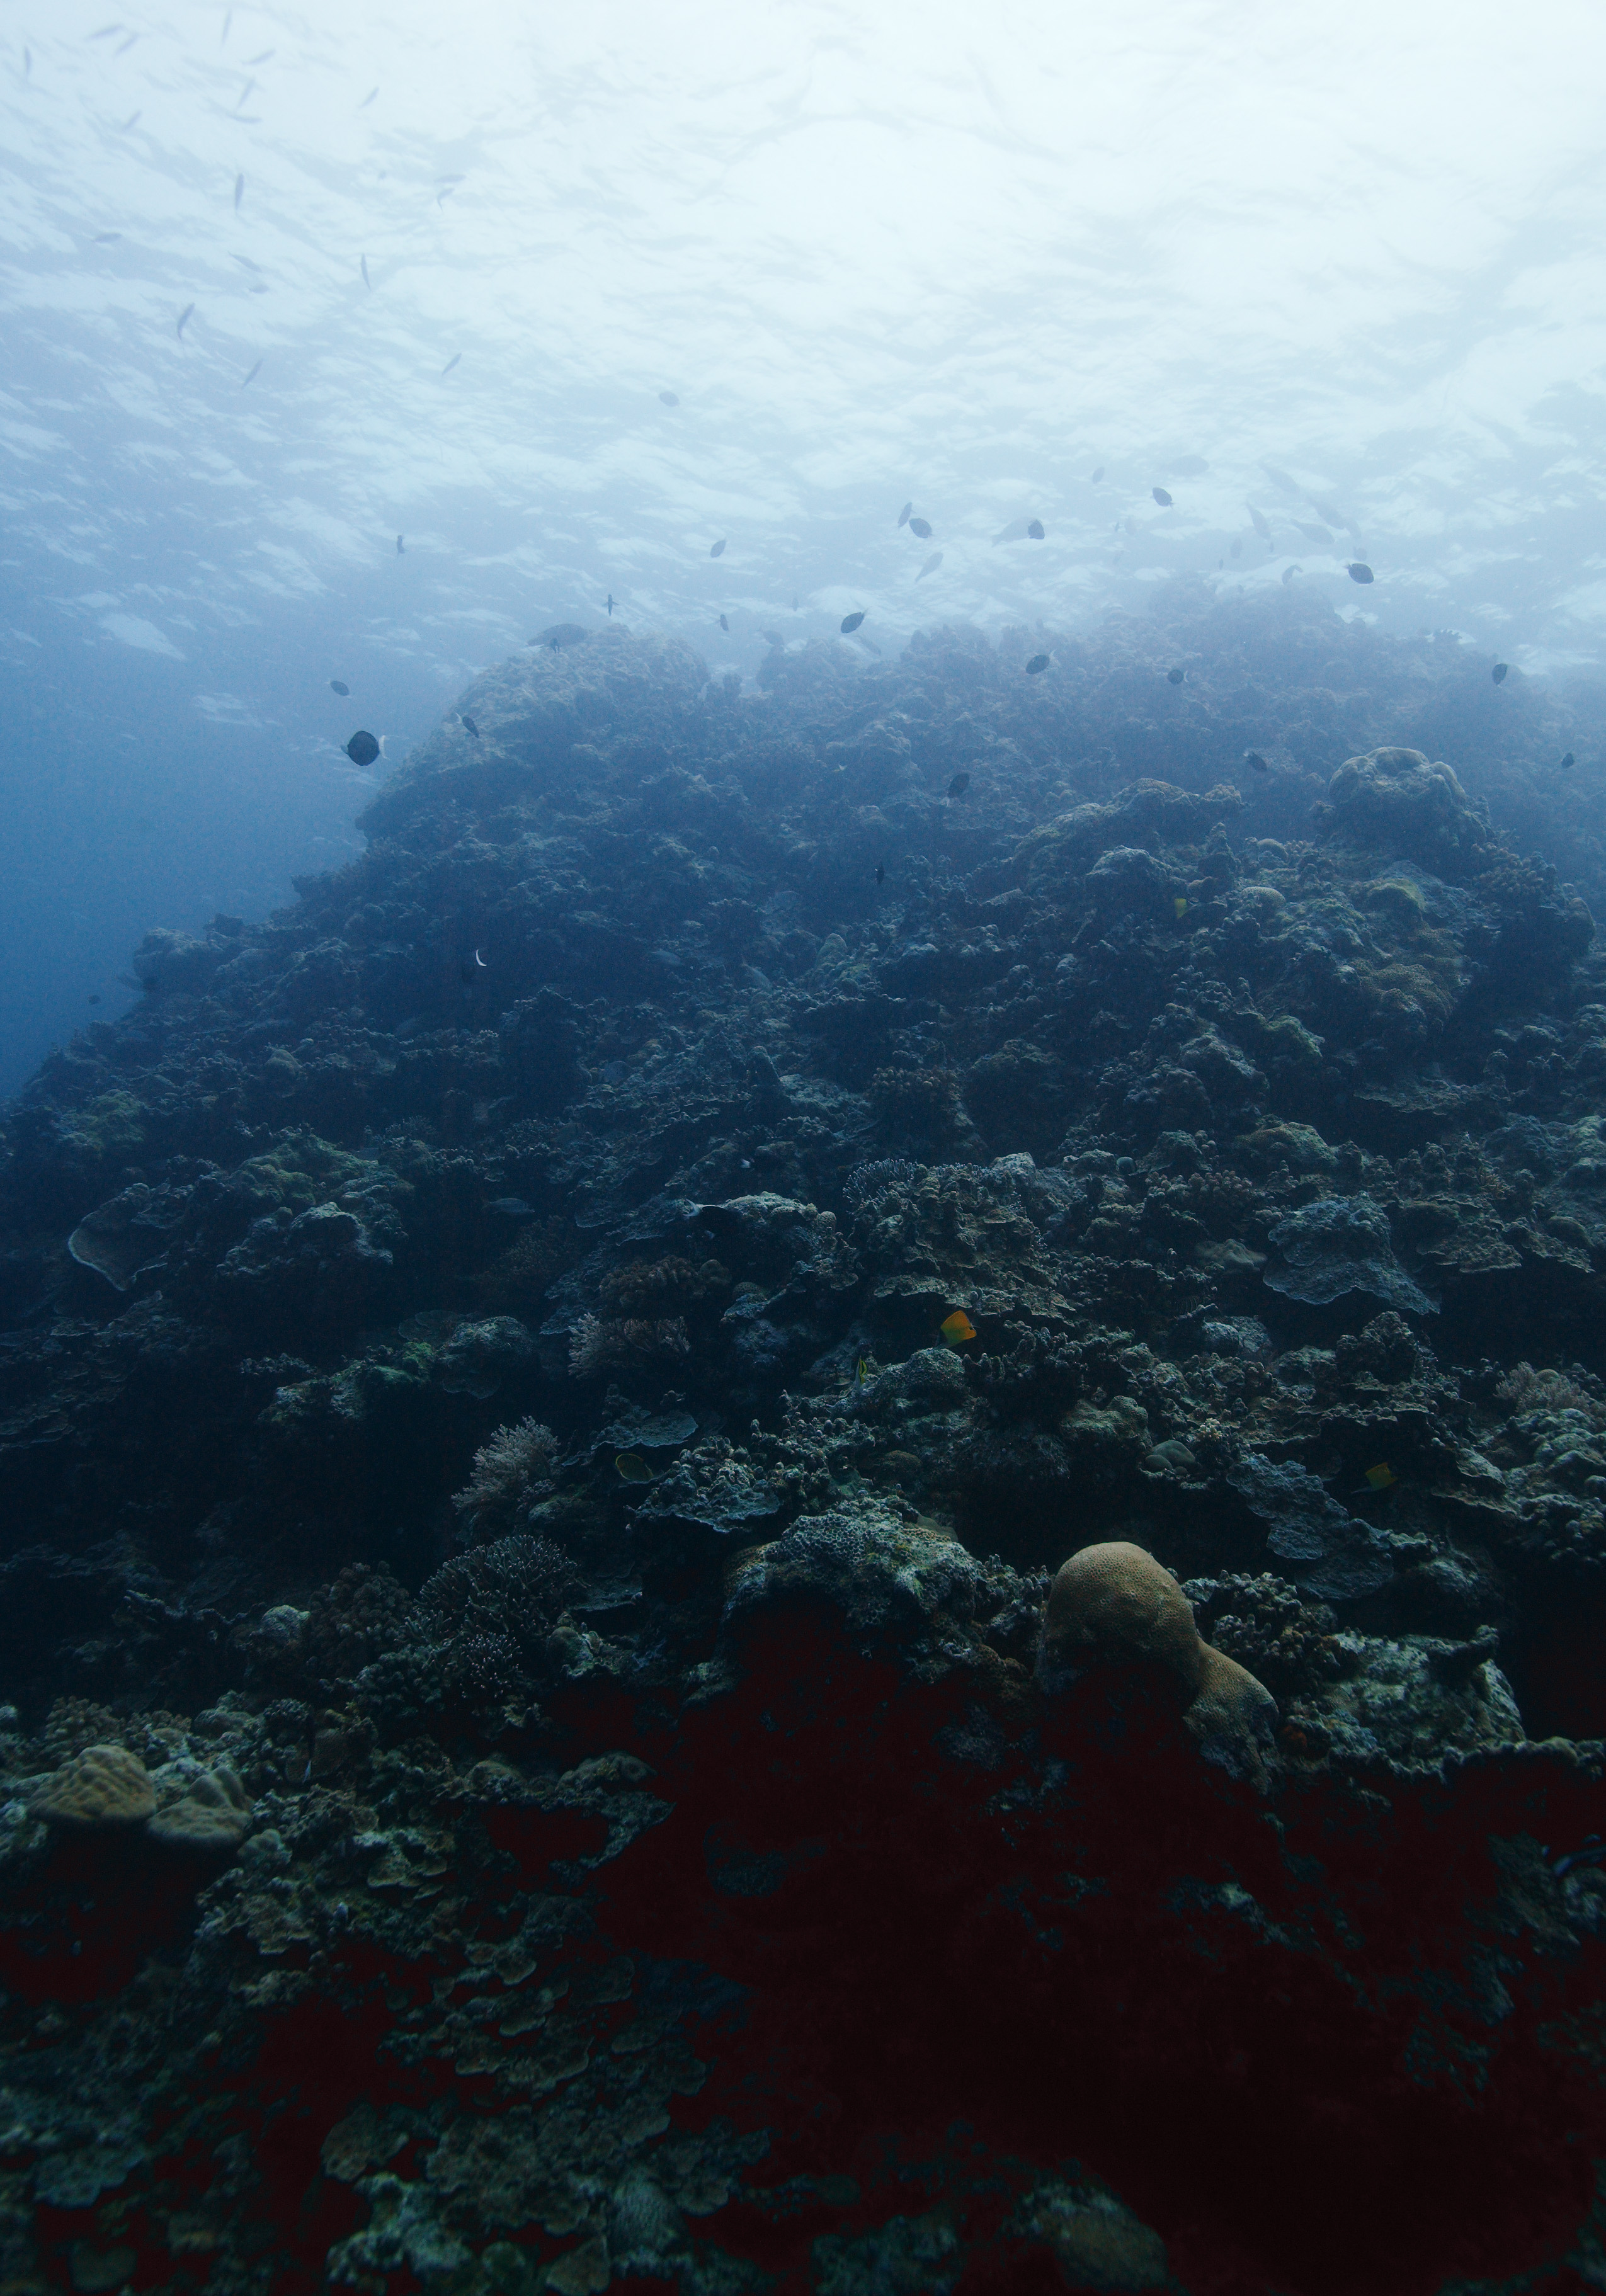 fotografia, material, livra, ajardine, imagine, proveja fotografia,O mar de um recife de coral, companheiro de molusco gigantesco, Coral, , fotografia subaqutica